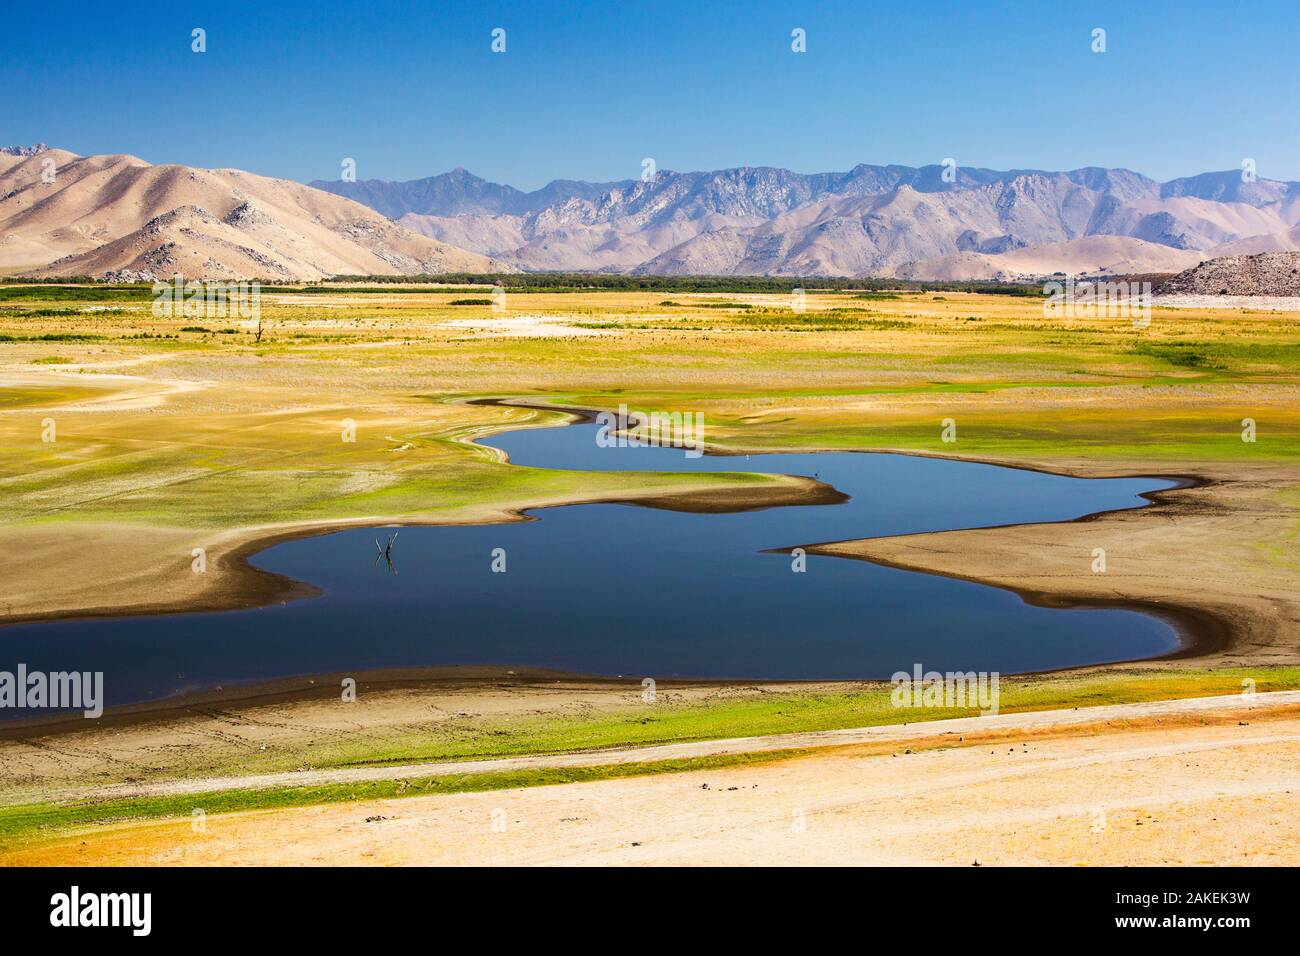 Lake Isabella près de Bakersfield, à moins de 13  % de sa capacité au cours de la sécheresse de 2012-2017 en Californie. Californie, USA, septembre 2014. Banque D'Images